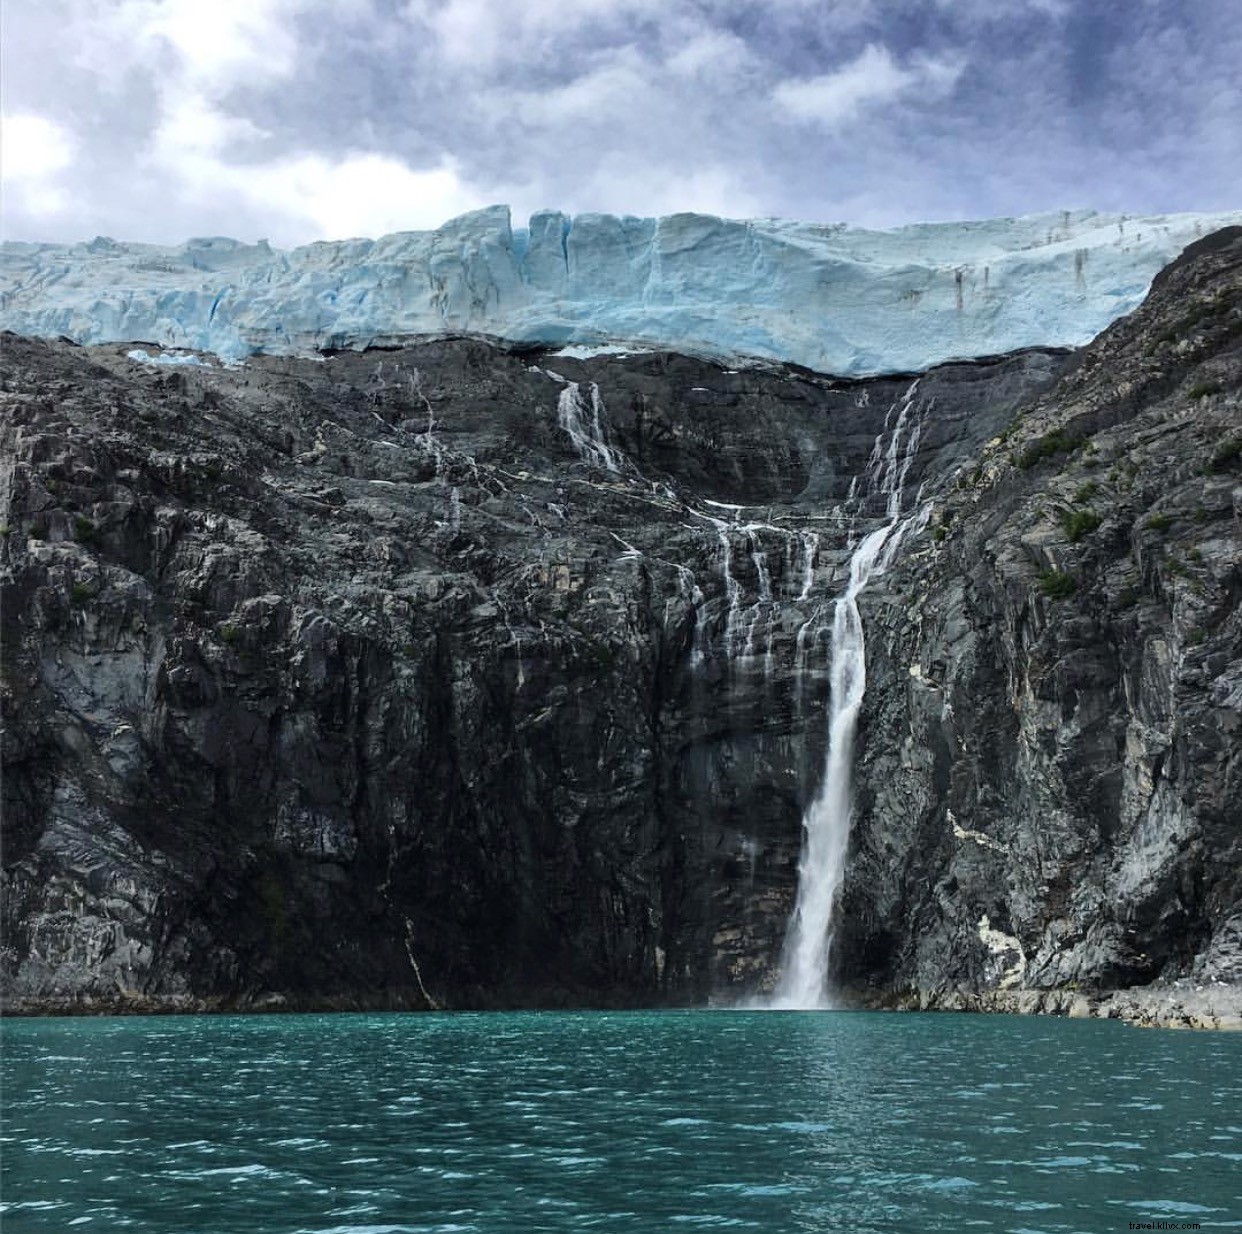 Ancoraggio su Instagram, Alaska:la nostra Top 10 settimanale 